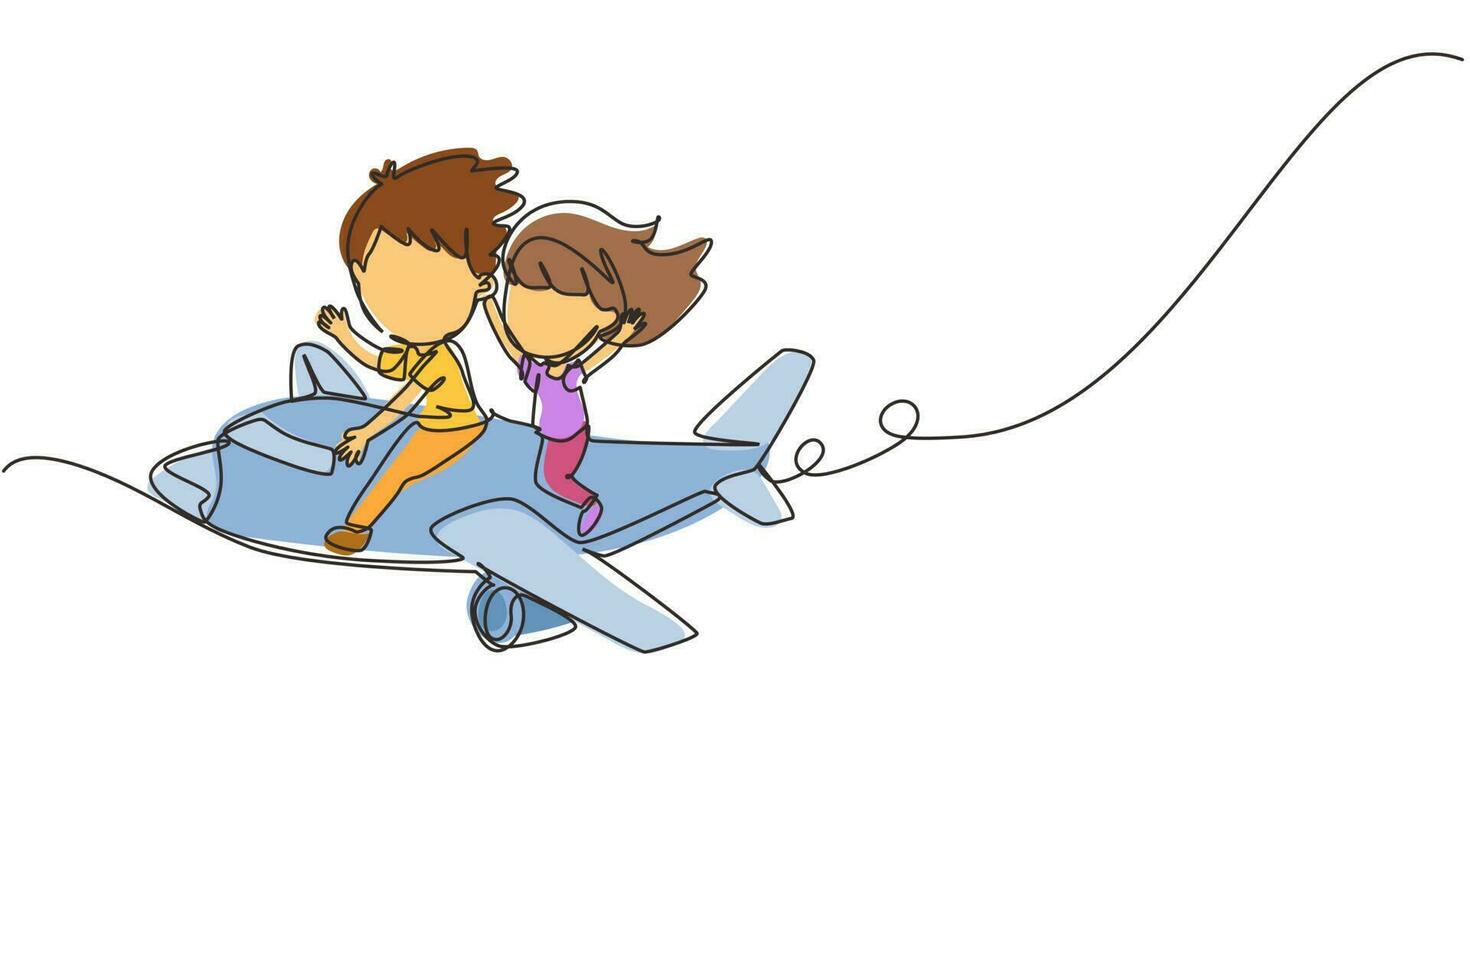 disegno a linea continua singola ragazzi e ragazze che guidano l'aereo. bambini felici in aereo. bambini in sella a un aereo, viaggio estivo, concetto di viaggio. illustrazione vettoriale di un disegno grafico a una linea